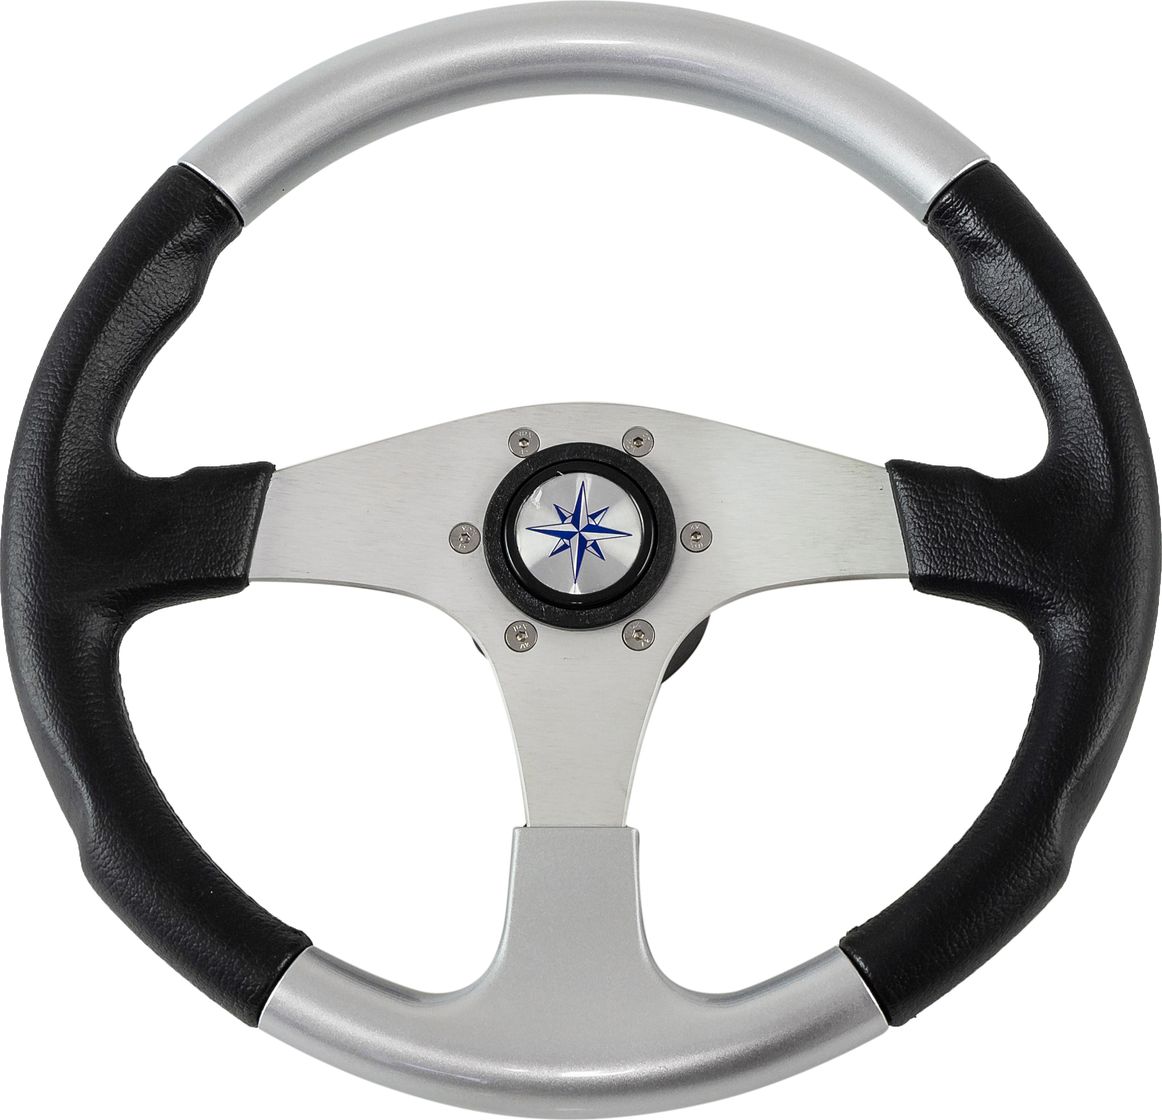 Рулевое колесо EVO MARINE 2 обод черносеребряный, спицы серебряные д. 355 мм VN850001-93 рулевое колесо riva rsl обод серый спицы серебряные д 320 мм vn732022 03